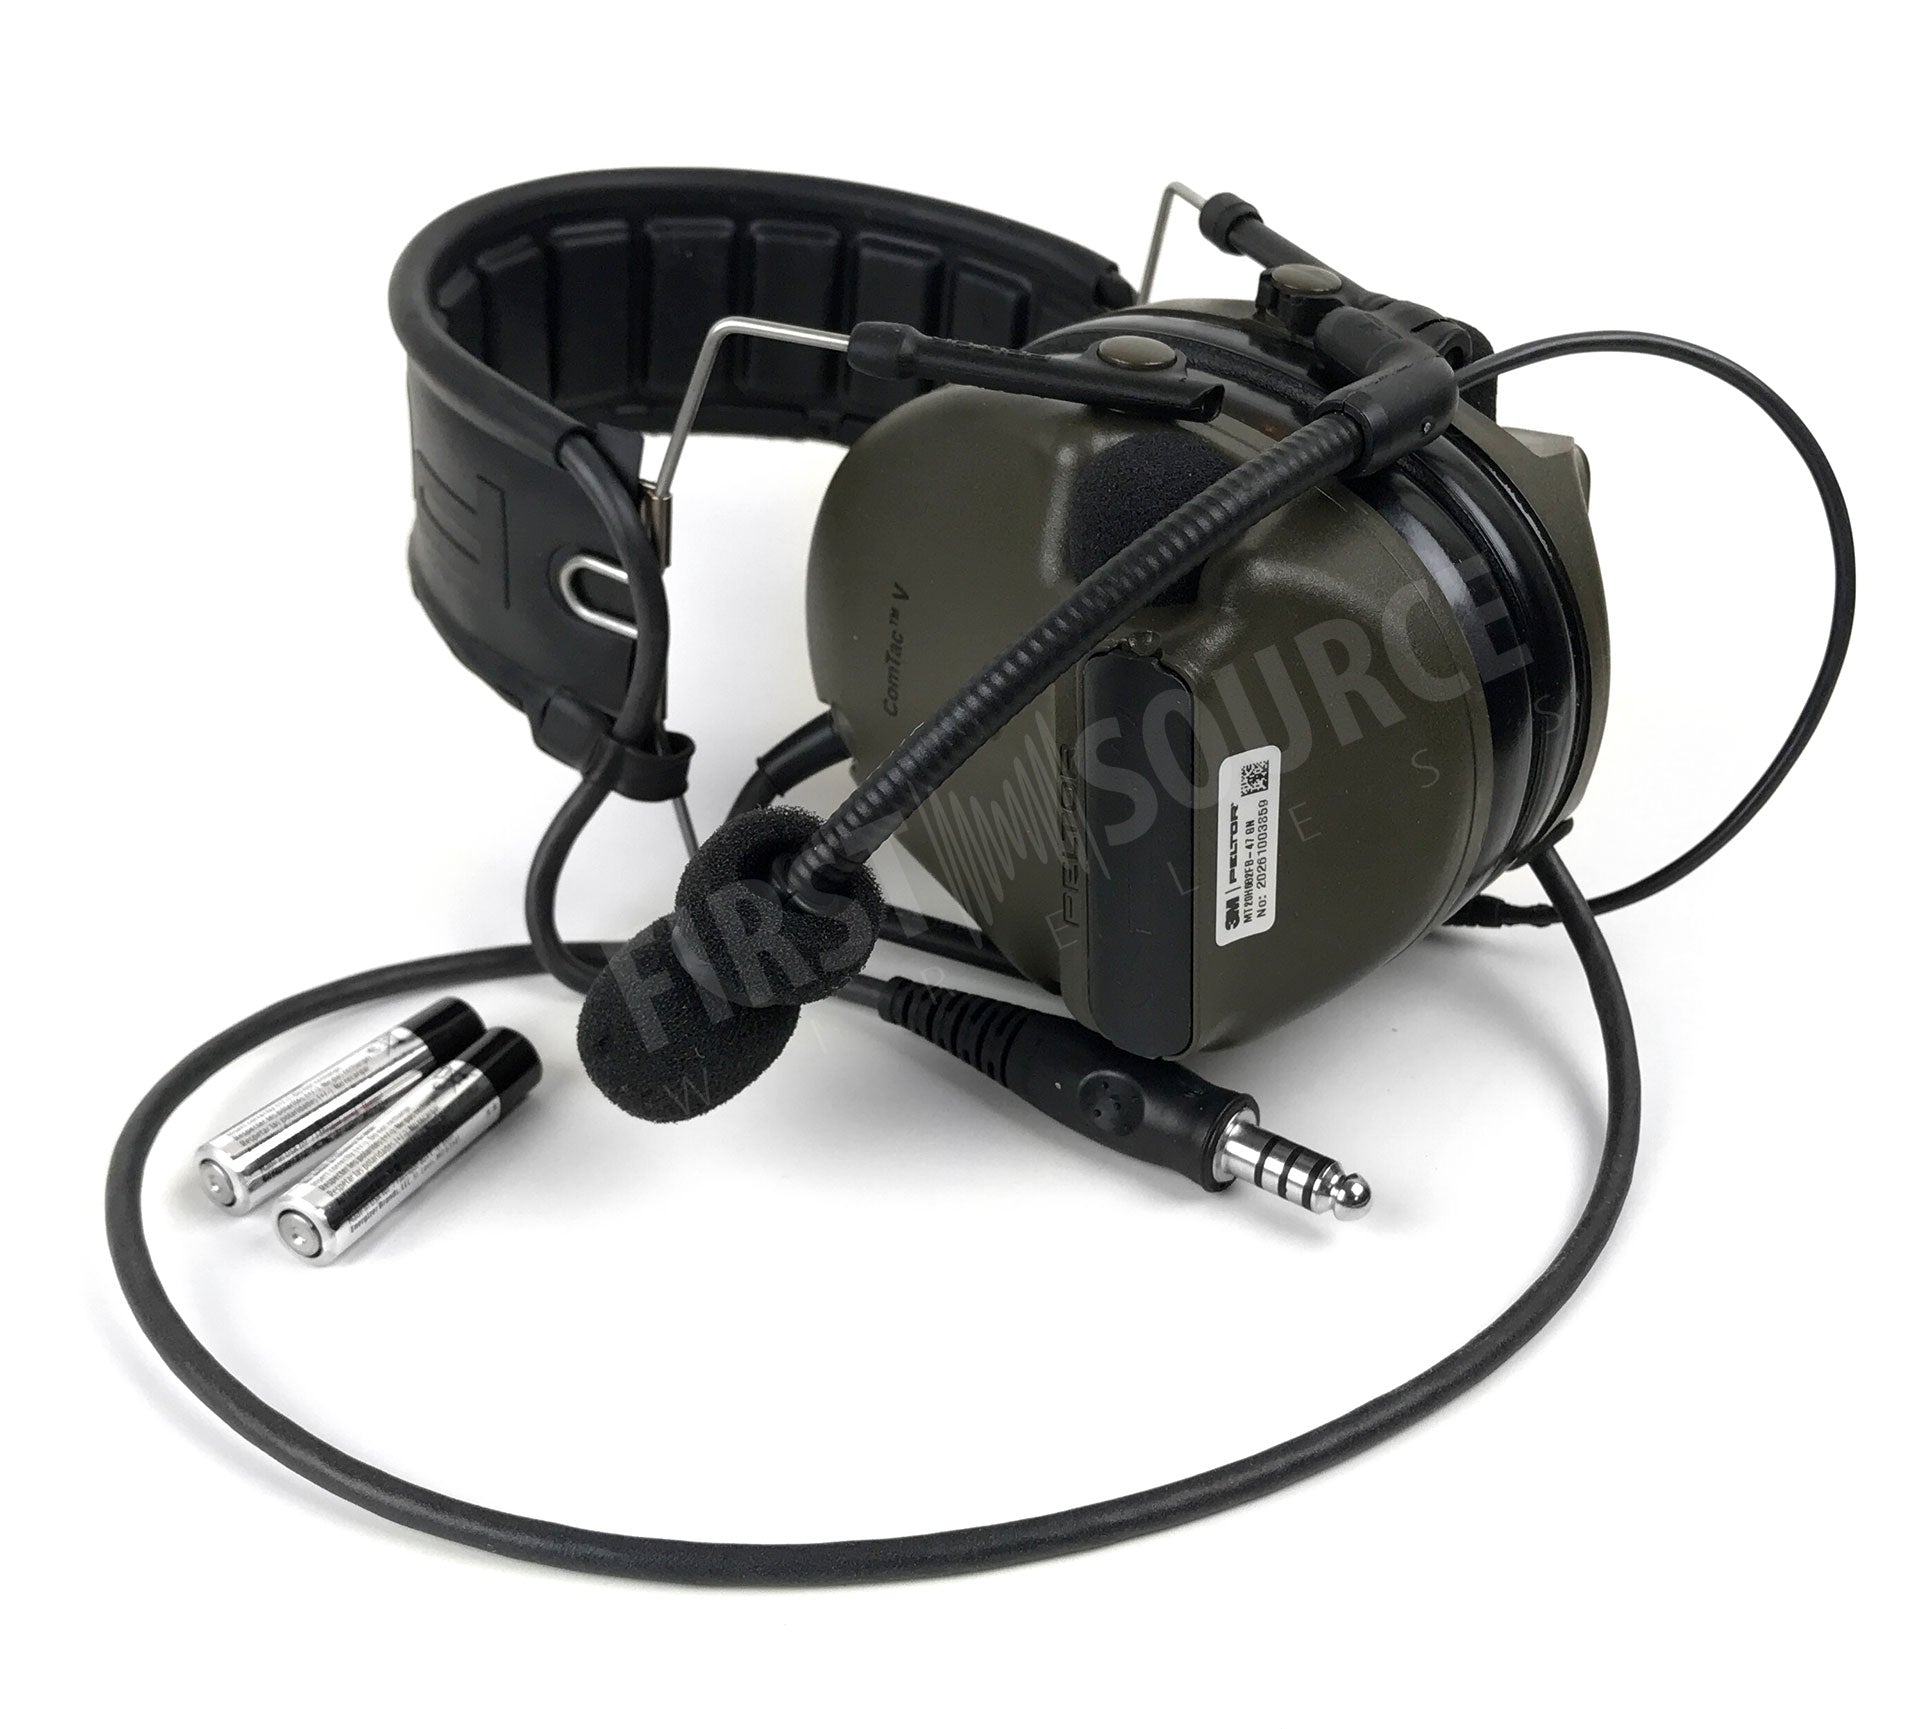 3M PELTOR ComTac V Headset MT20H682FB-47 GN, plegable, cable único, micrófono dinámico estándar, cableado NATO, verde